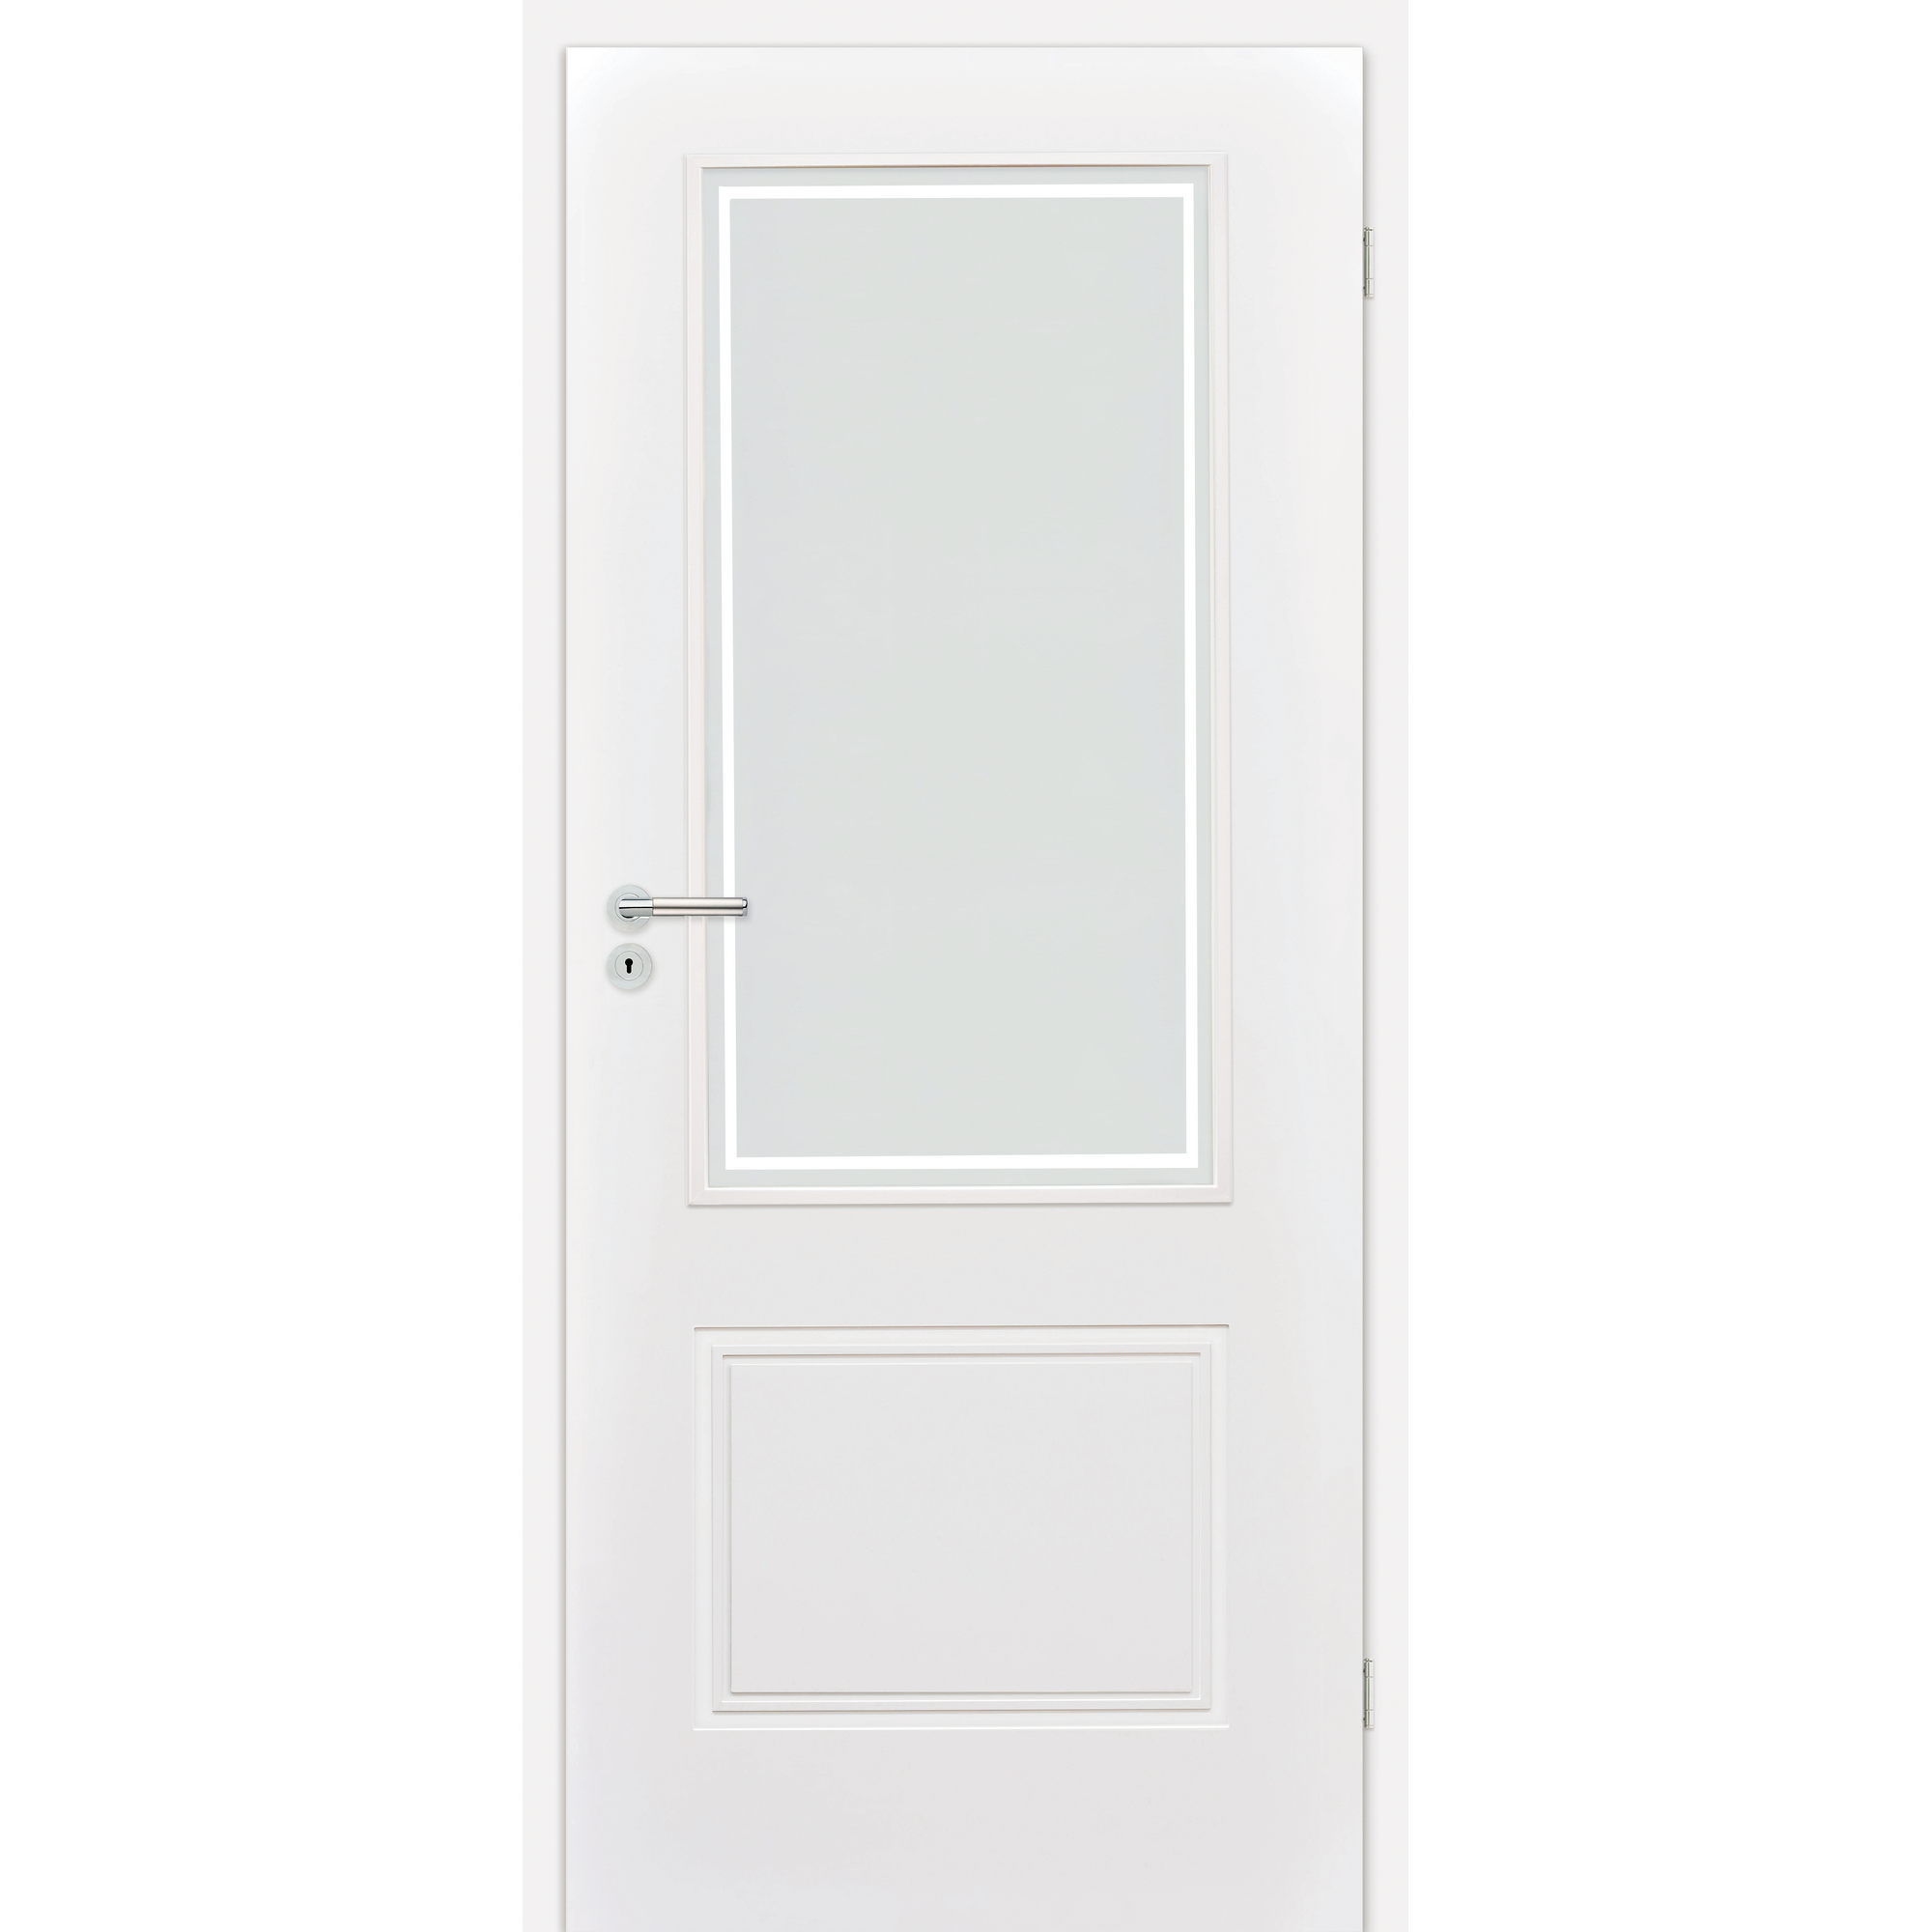 Innentür 'Linea 1.3' mit Lichtausschnitt weiß 198,5 x 86 cm, Rechtsanschlag + product picture